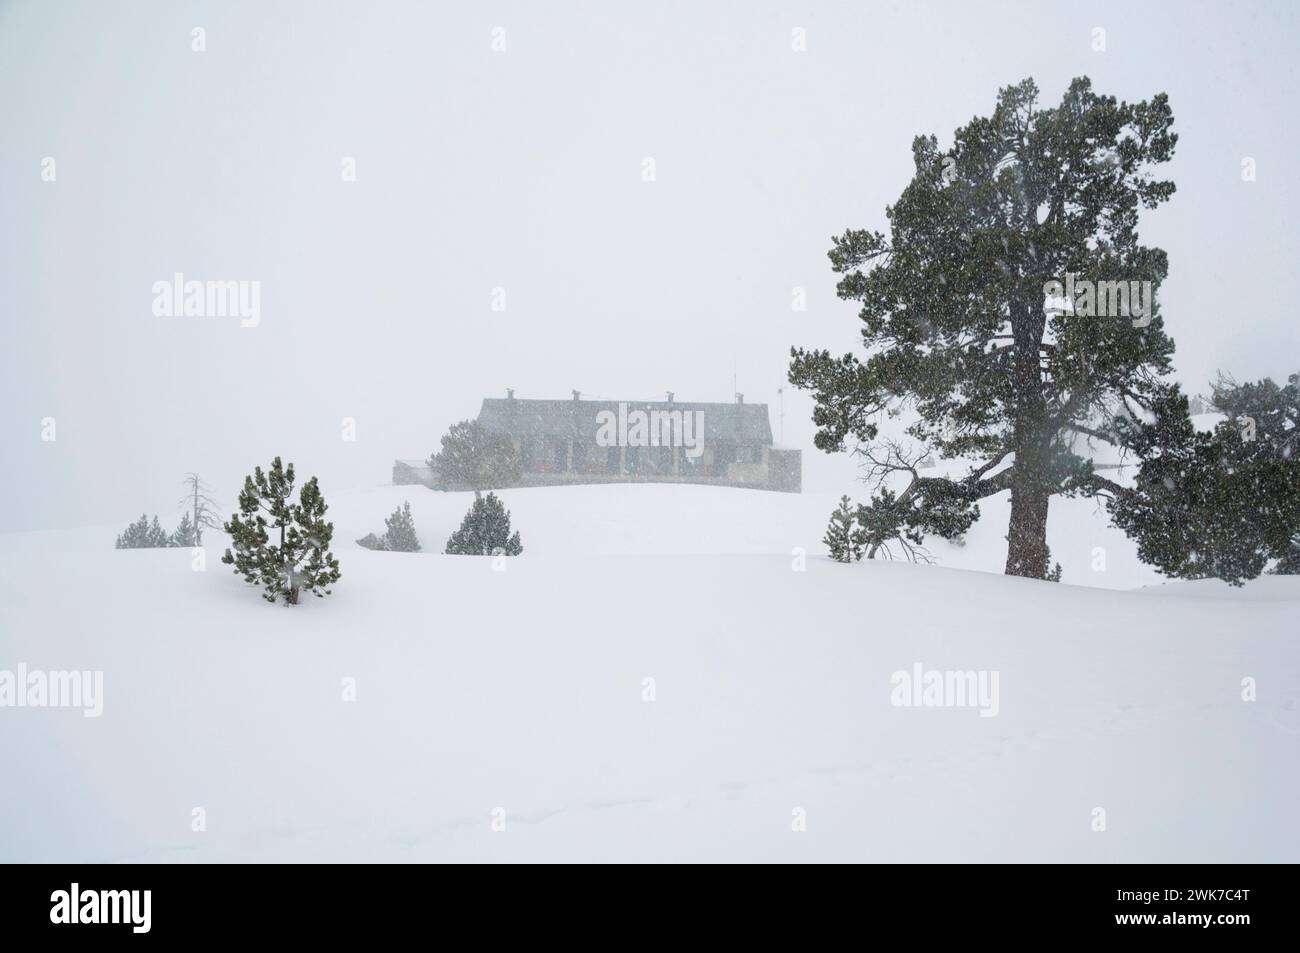 Dintorni del rifugio Amitges durante una nevicata in inverno. Parco naturale Aigüestortes i Estany de Sant Maurici, Lleida, Catalogna, Spagna, Pirenei Foto Stock